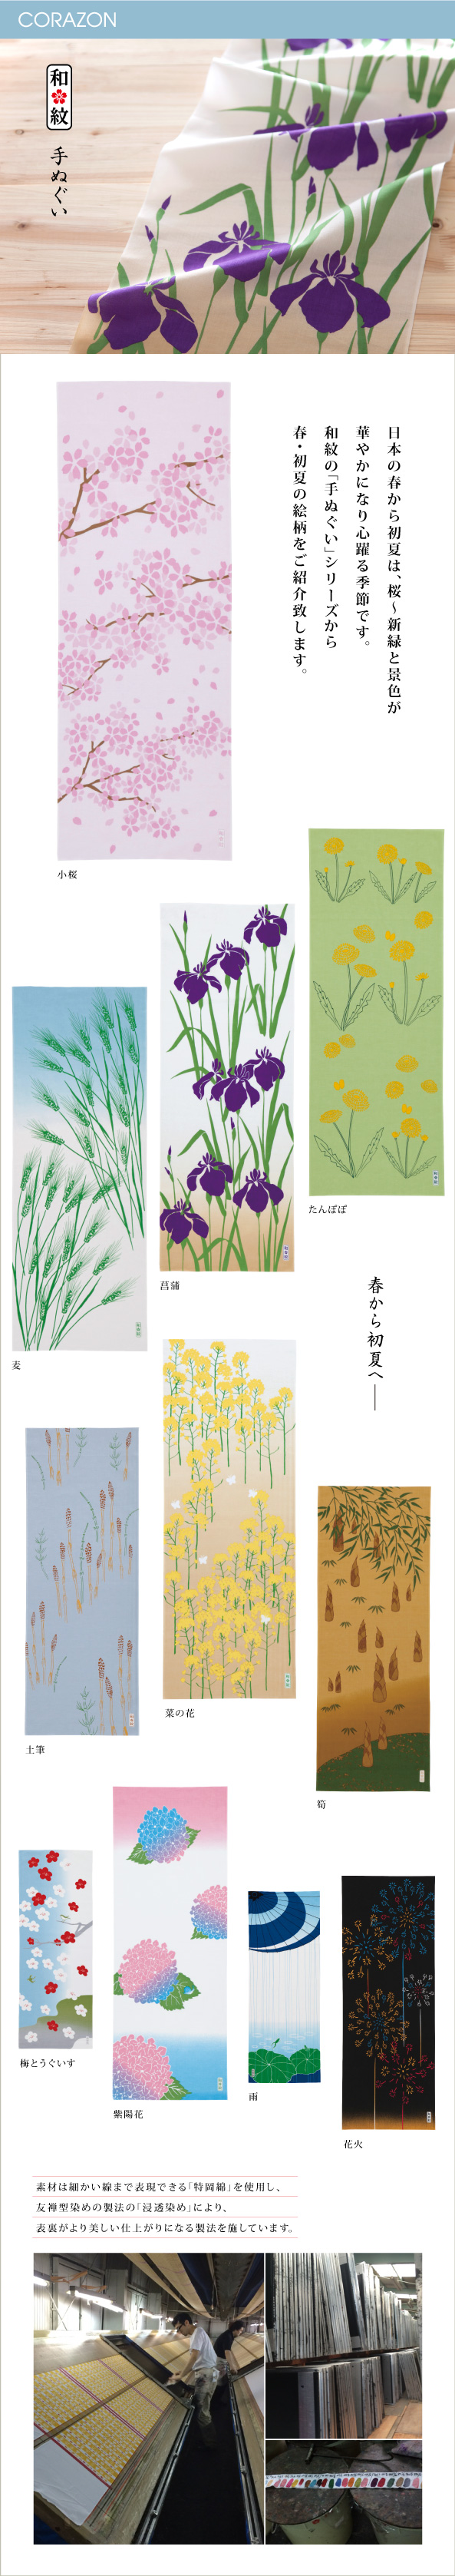 CORAZONメルマガ　20150224<br>

日本の春から初夏は、桜〜新緑と景色が<br>
華やかになり心躍る季節です。<br>
和紋の「手ぬぐい」シリーズから<br>
春・初夏の絵柄をご紹介致します。<br>

